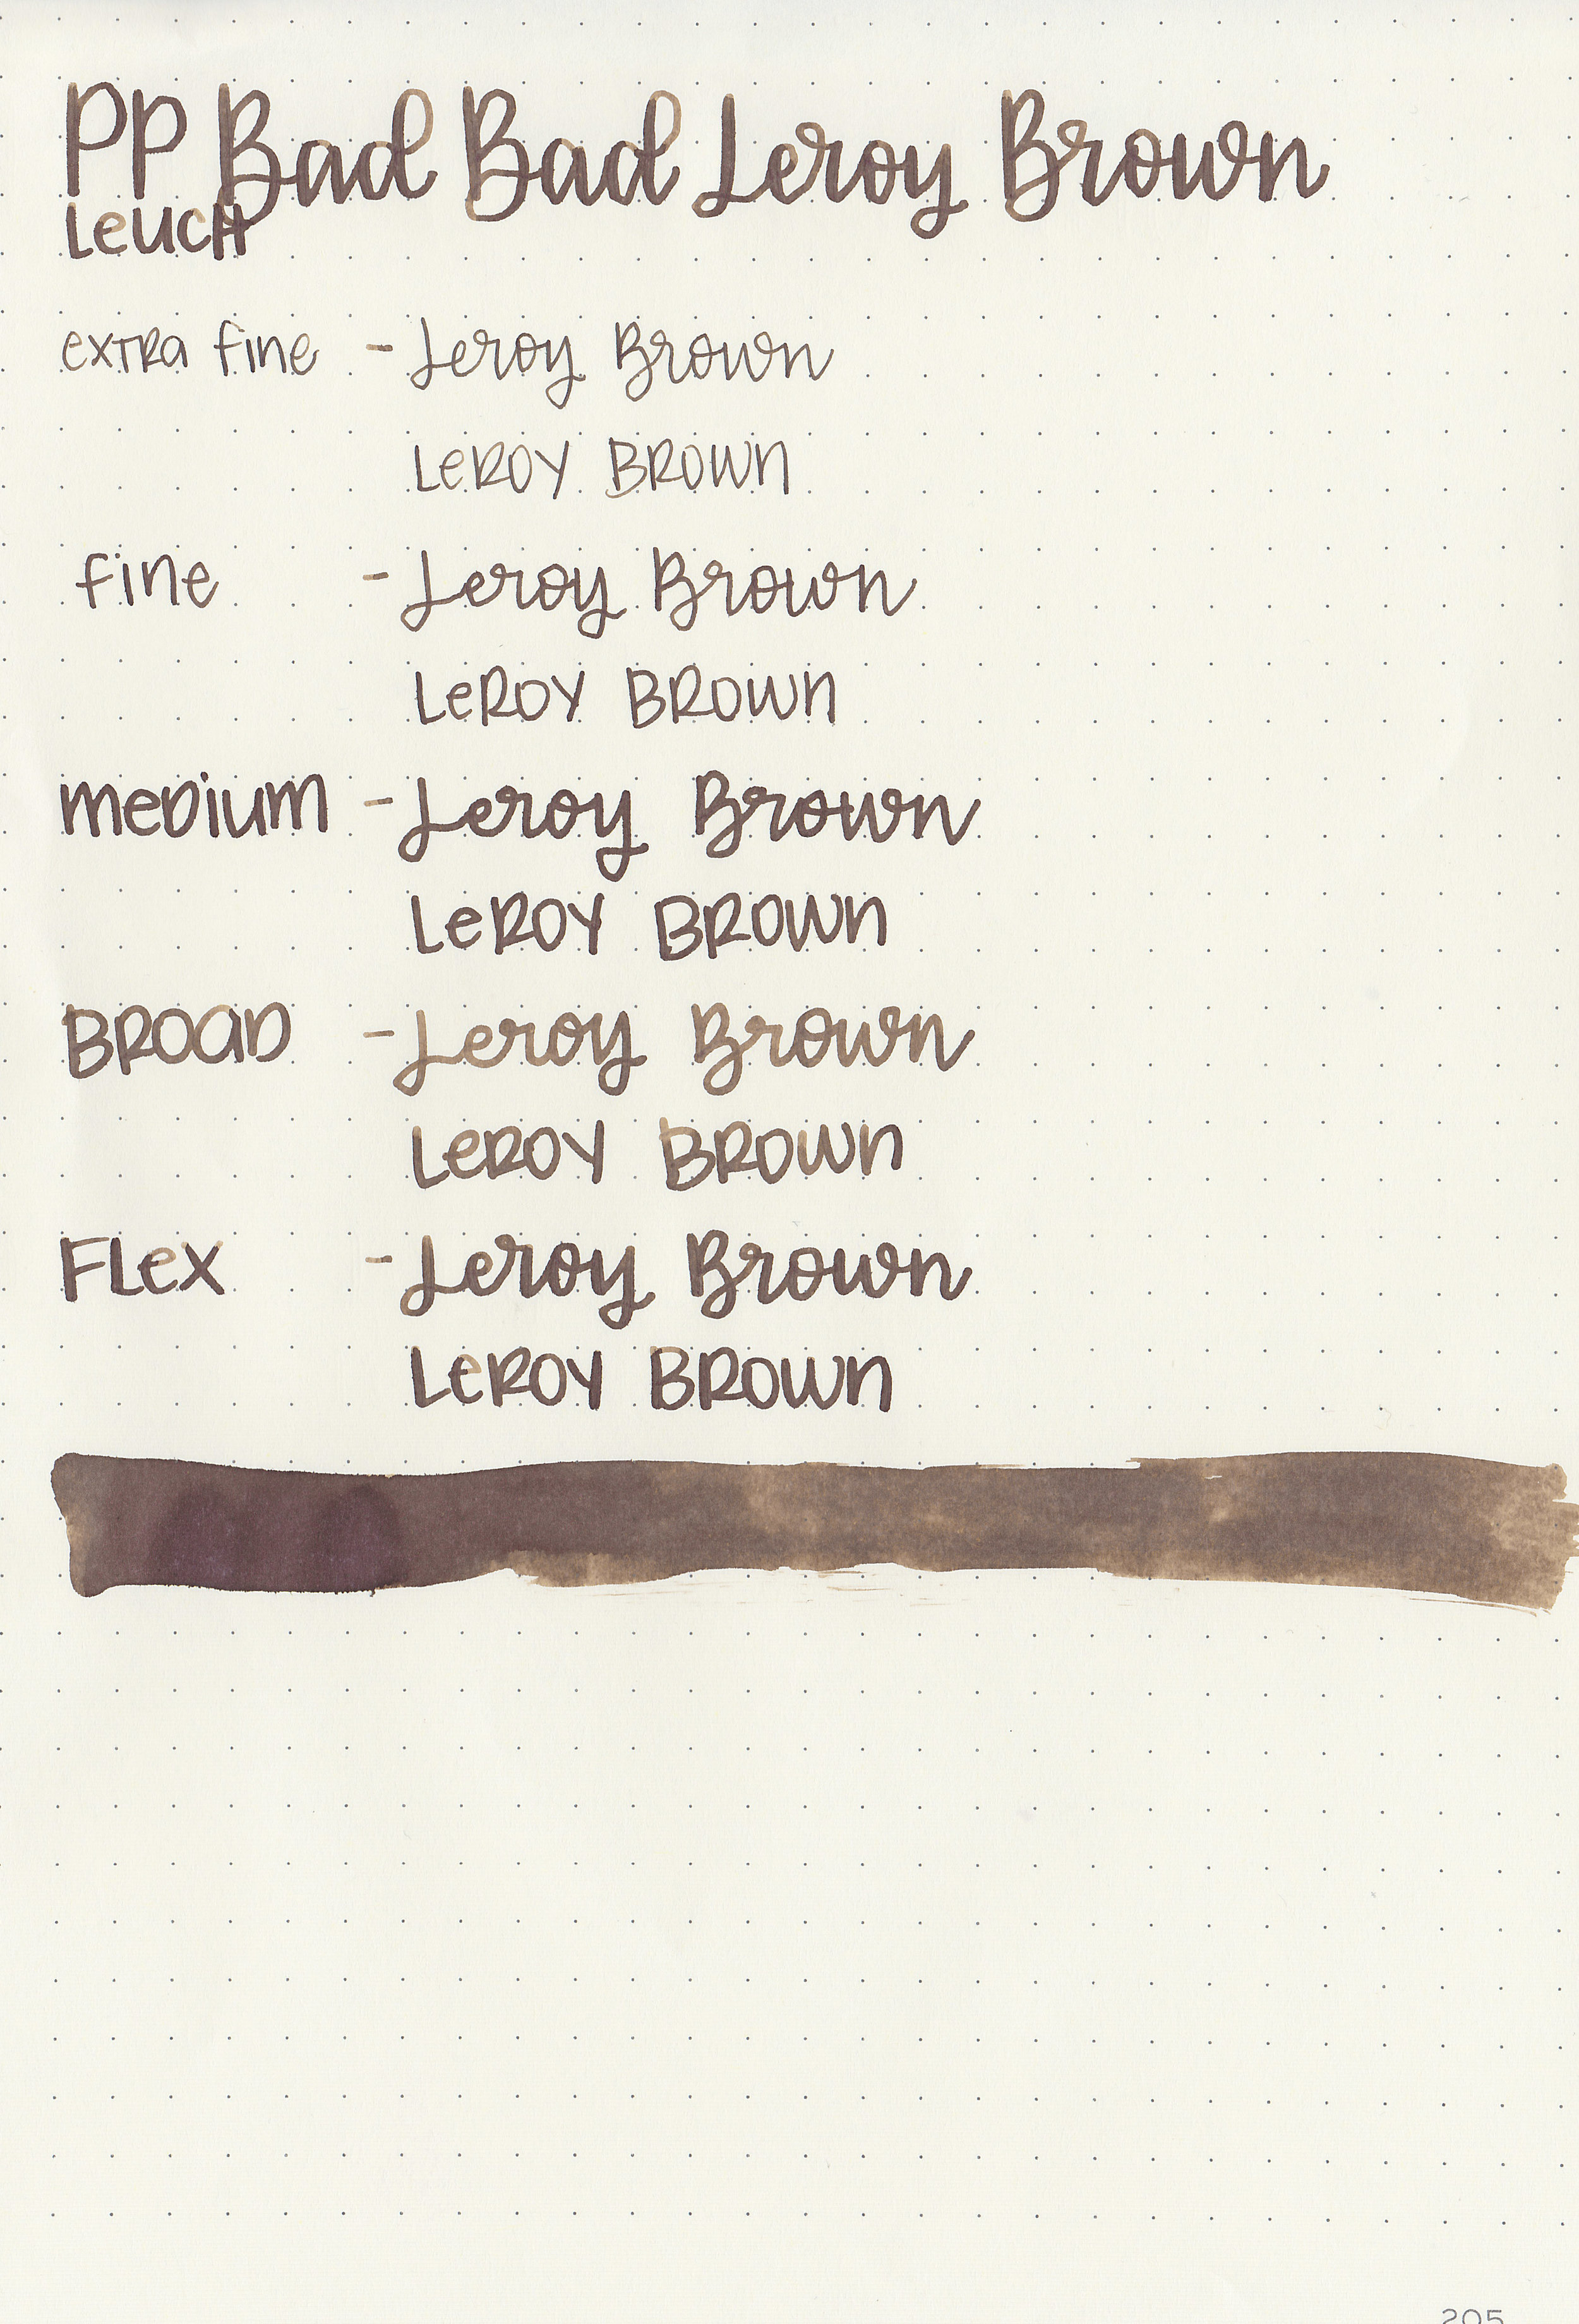 pp-leroy-brown-9.jpg